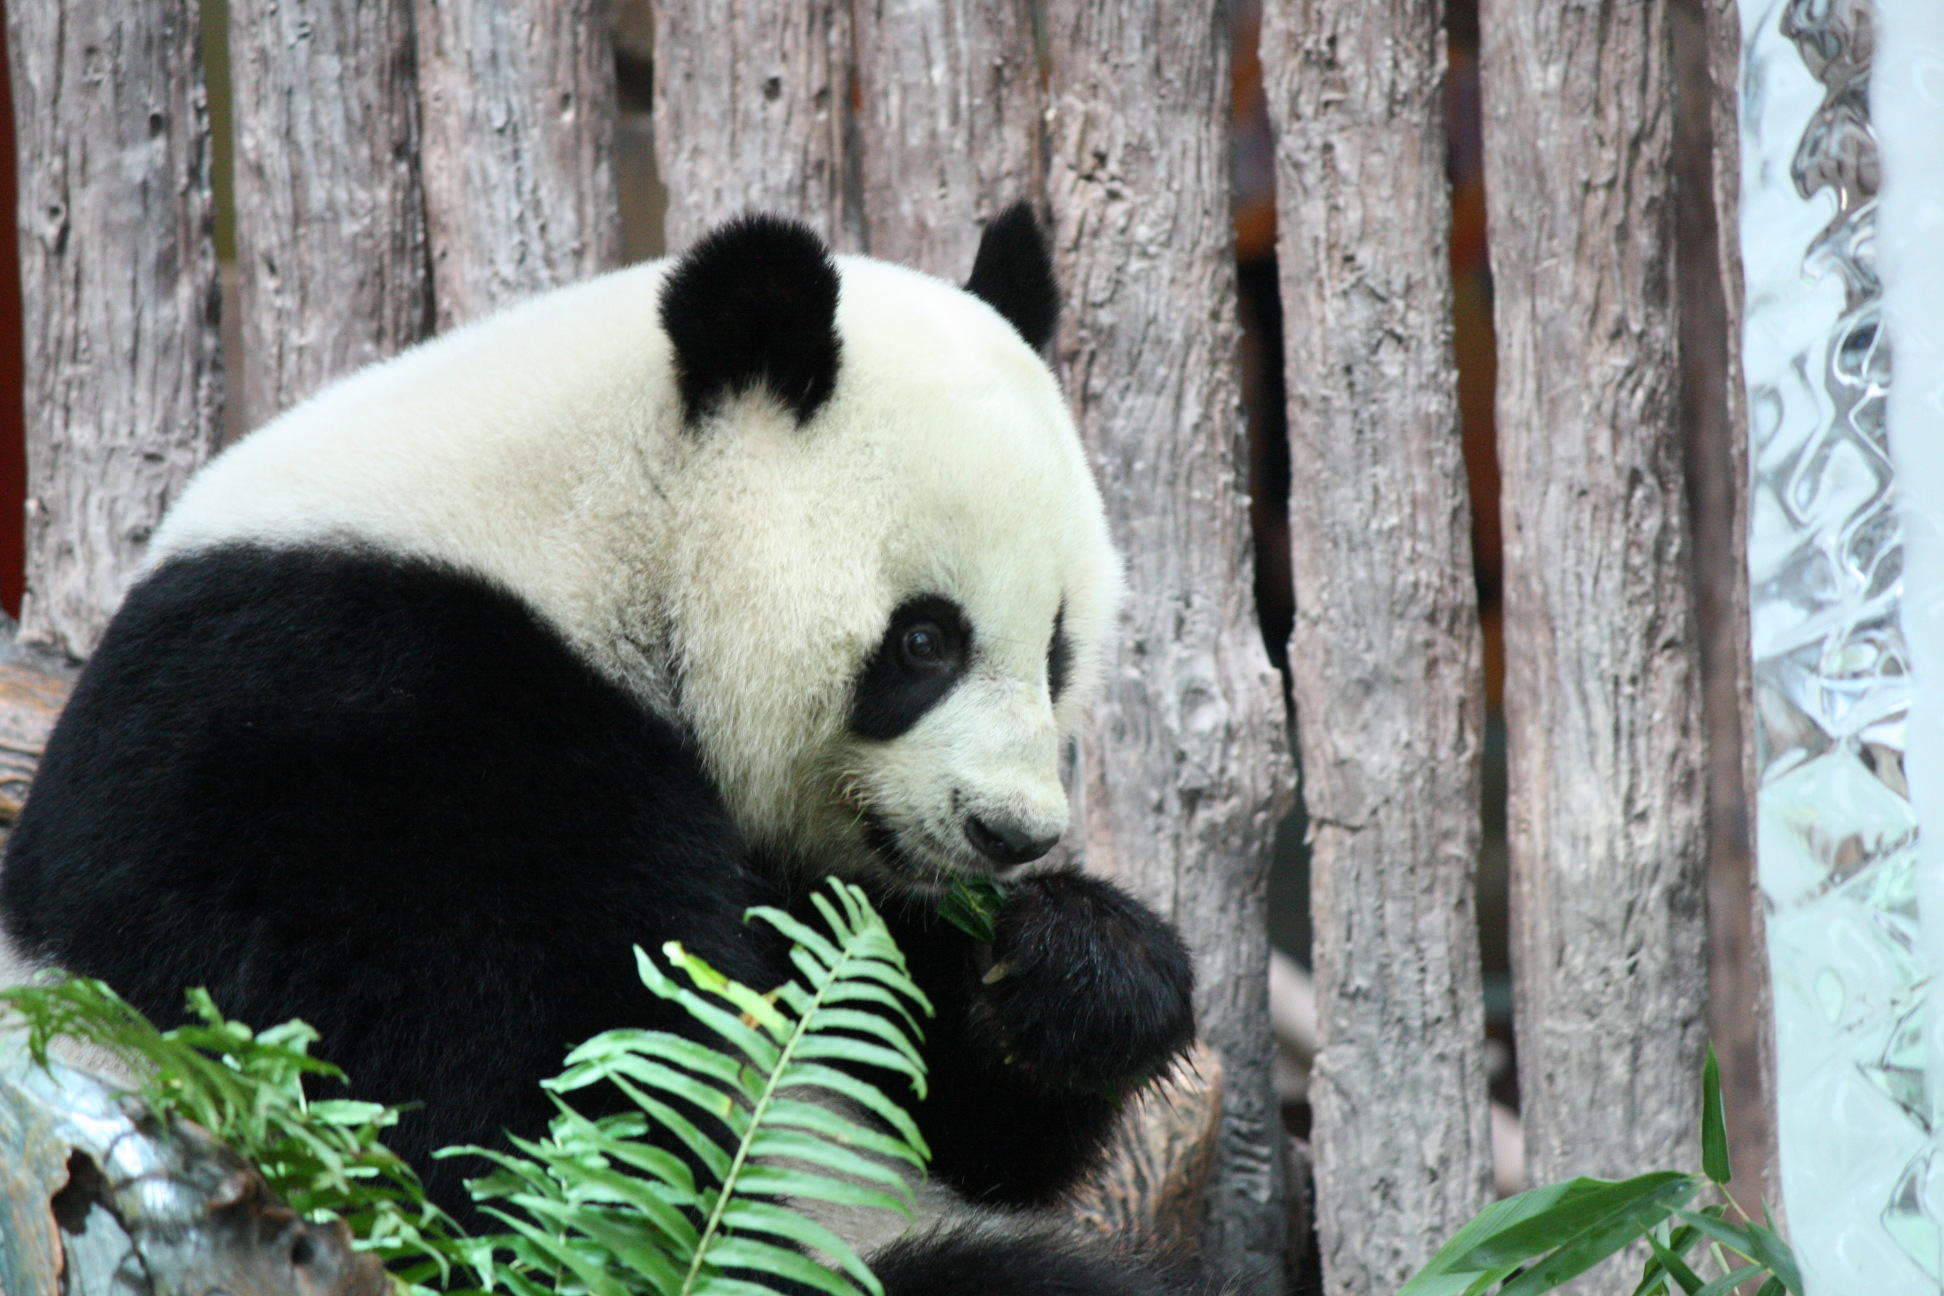 Giant panda "Lin Bing" enjoys its meal at the Chiang Mai Zoo in Chiang Mai, Thailand. Photo: Xinhua